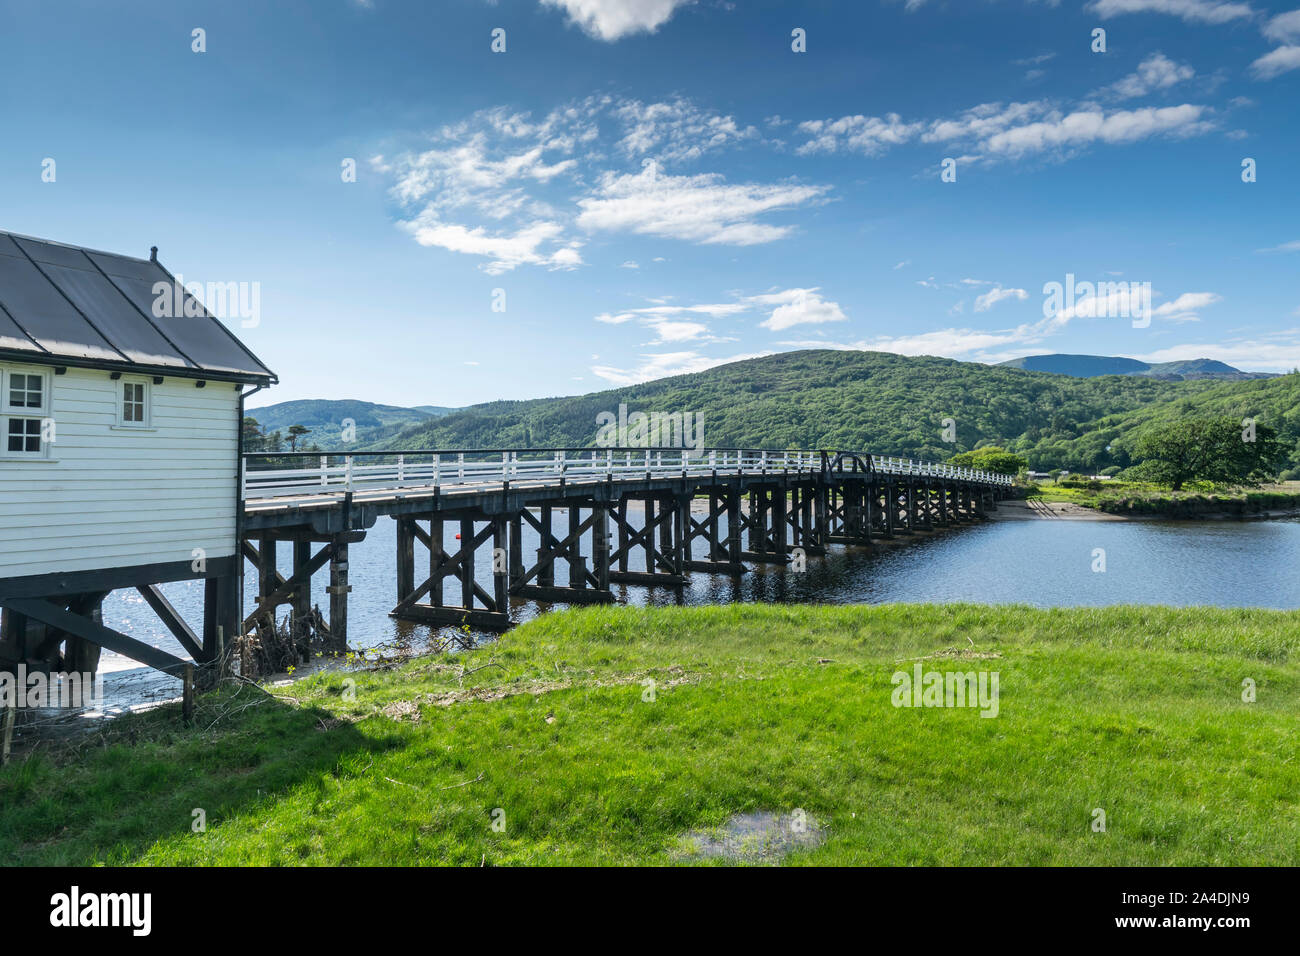 Penmaenpool ponte a pedaggio in Gwynedd sulla Mawddach estuary Foto Stock